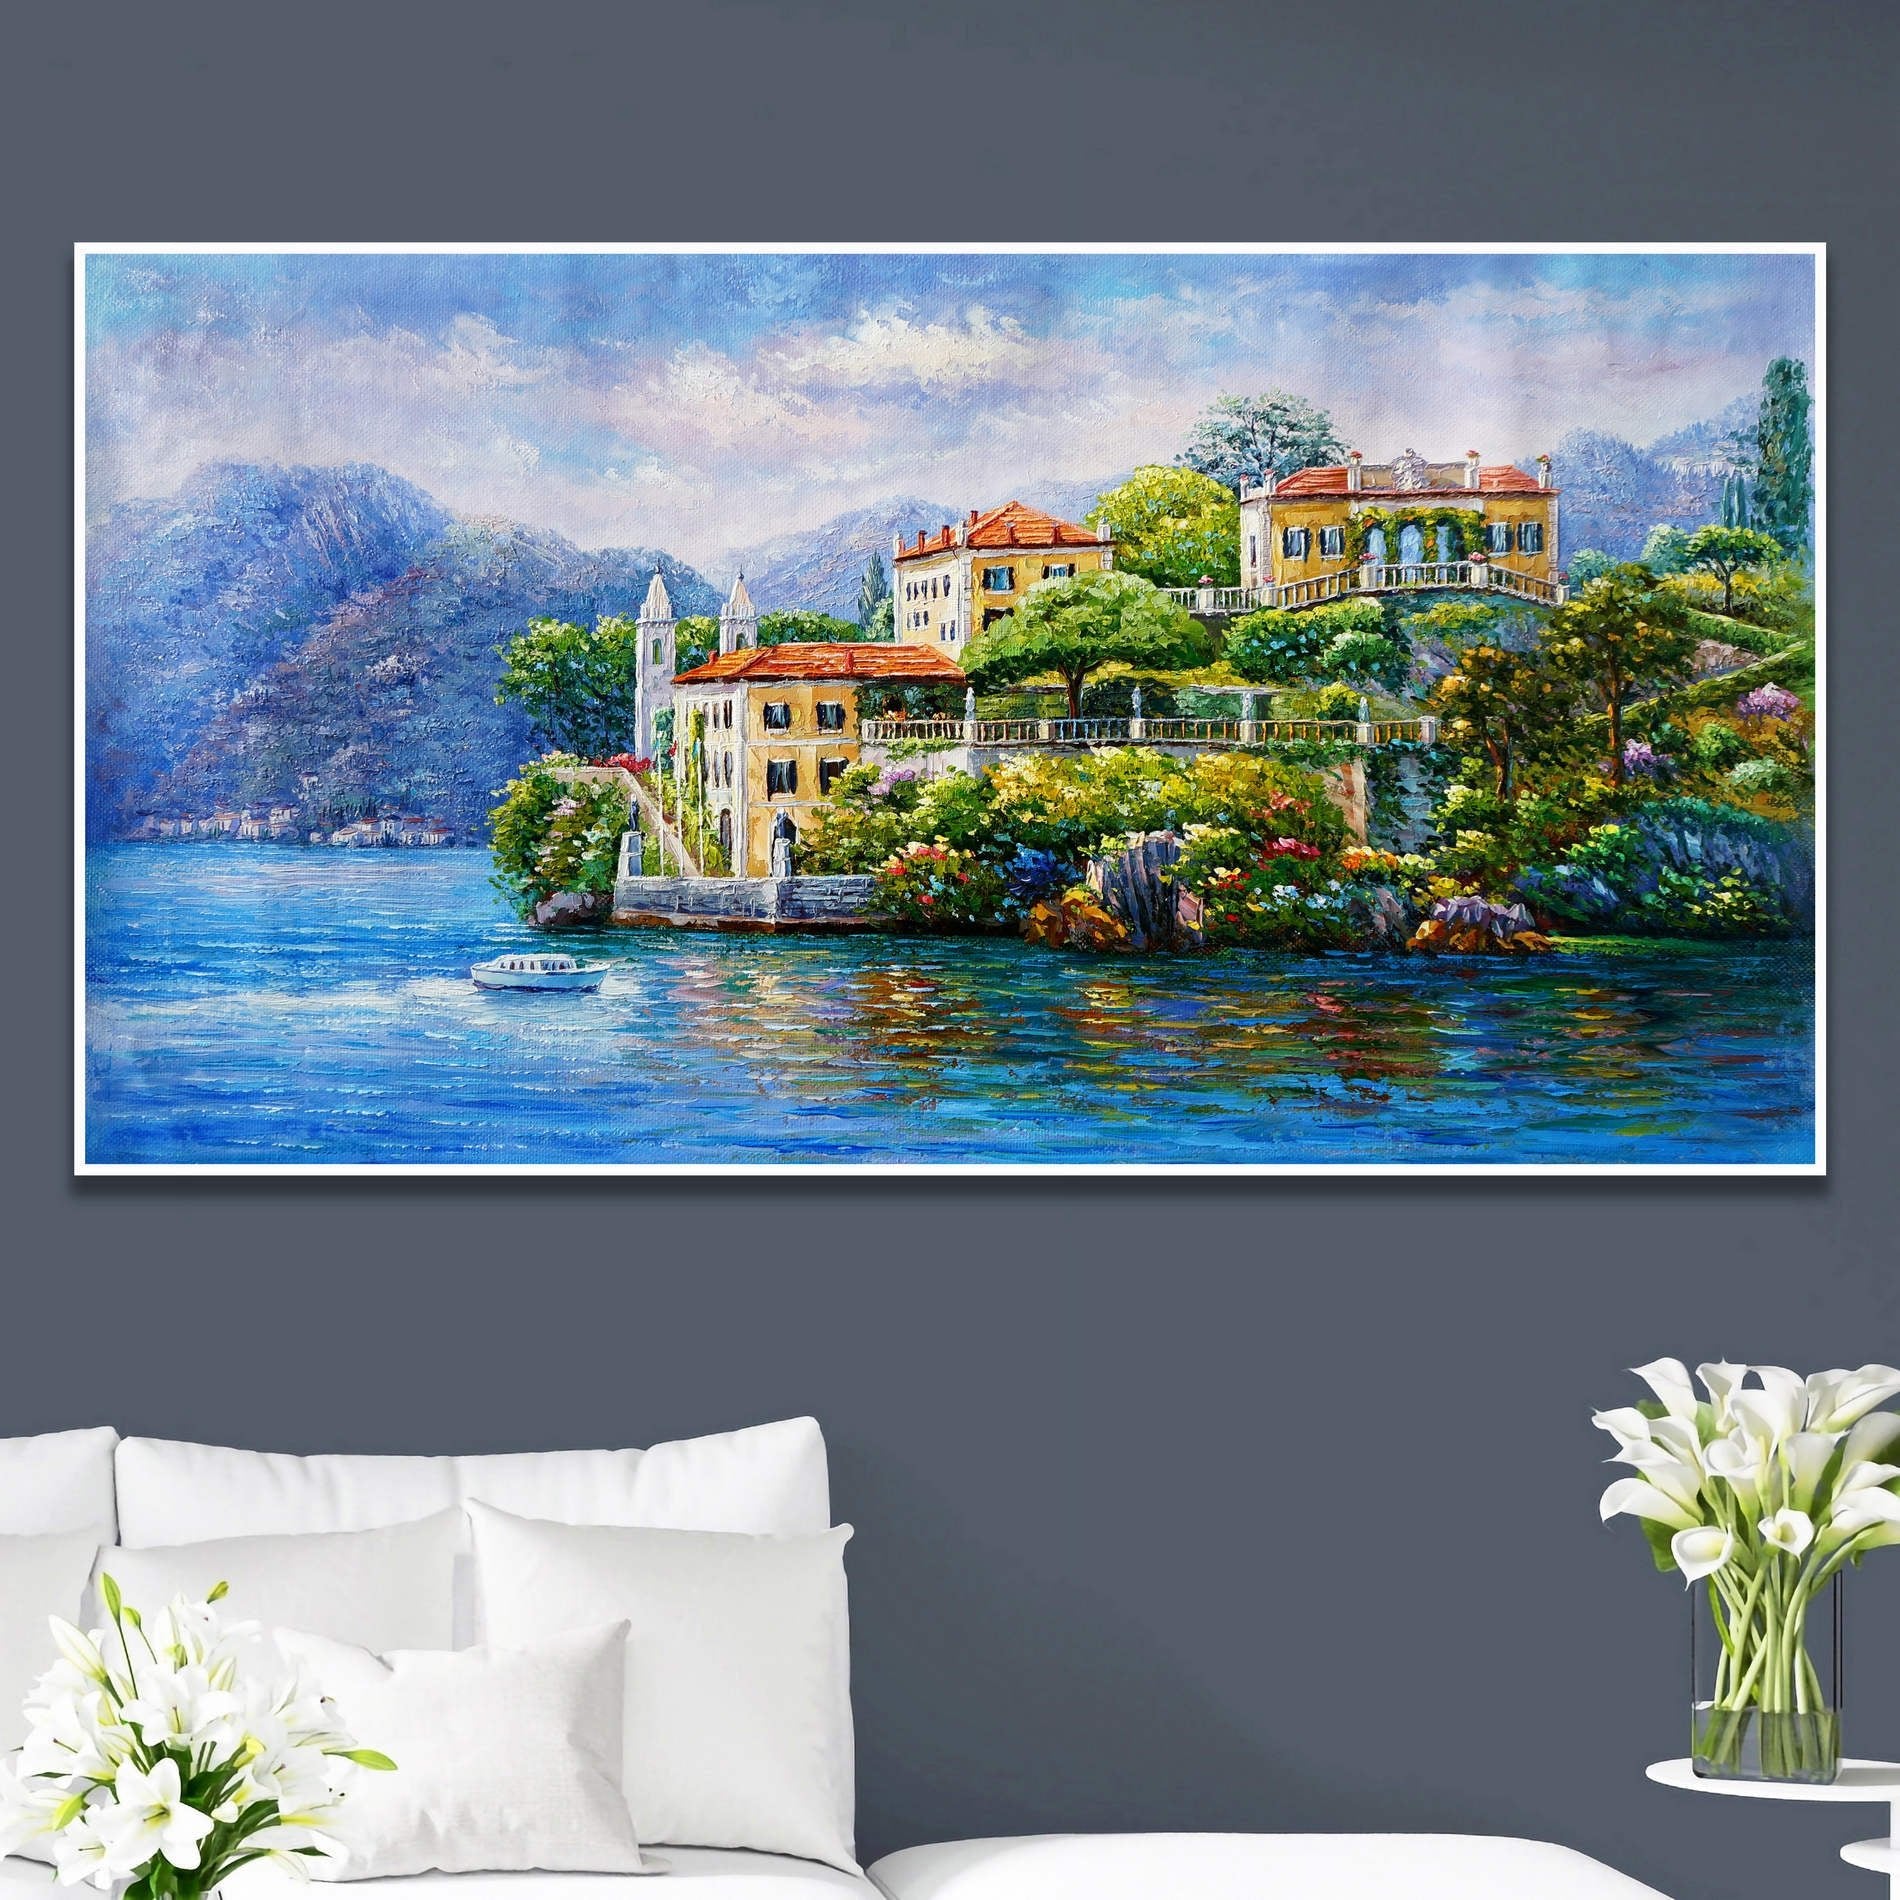 Quadro della famosa Villa del Balbianello sul lago di Como